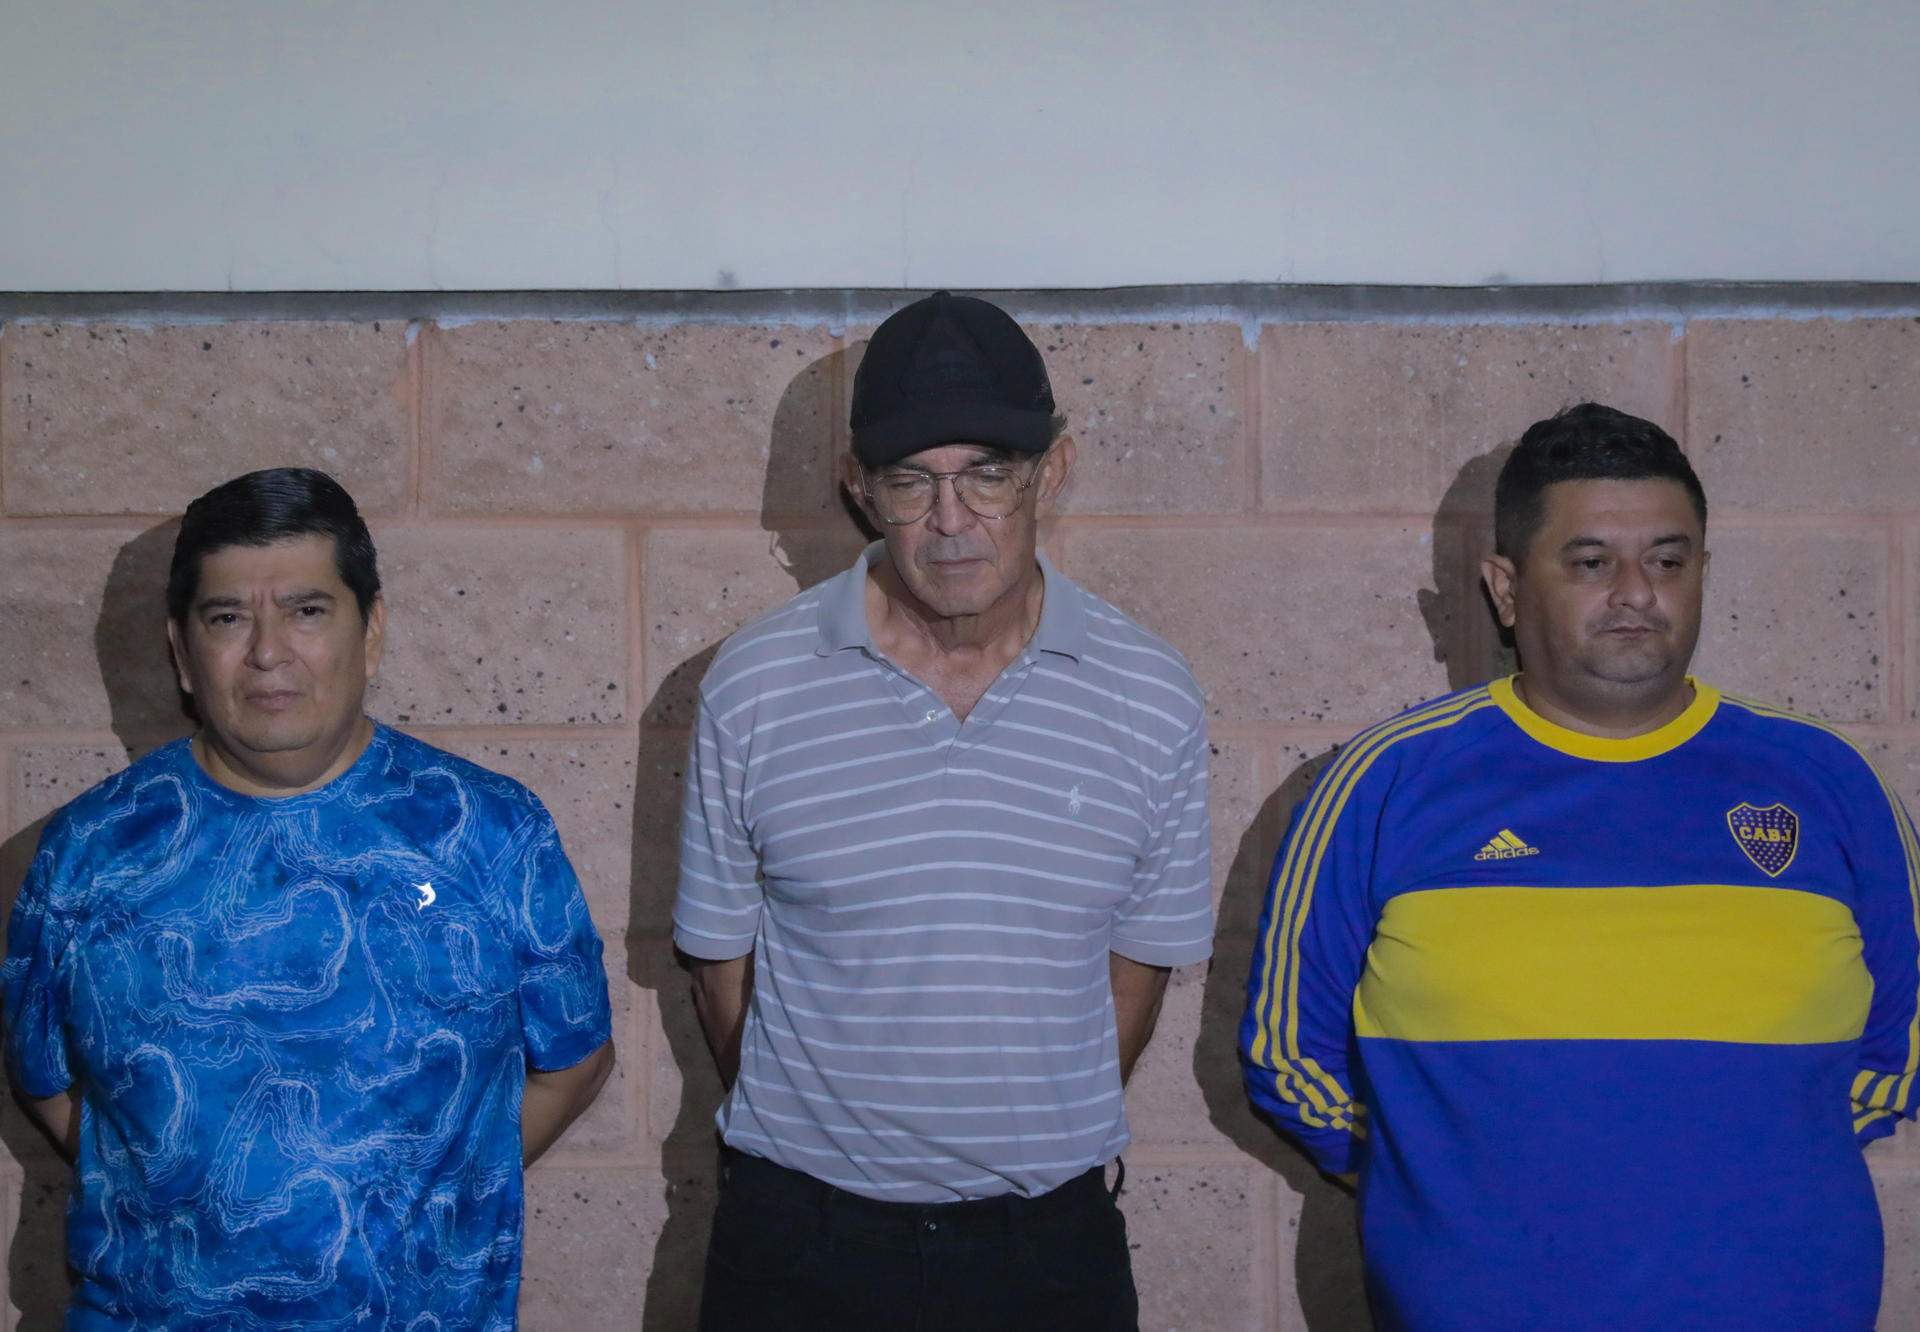 Arrestan a presidente y gerentes de equipo Alianza por muertes en estadio en El Salvador